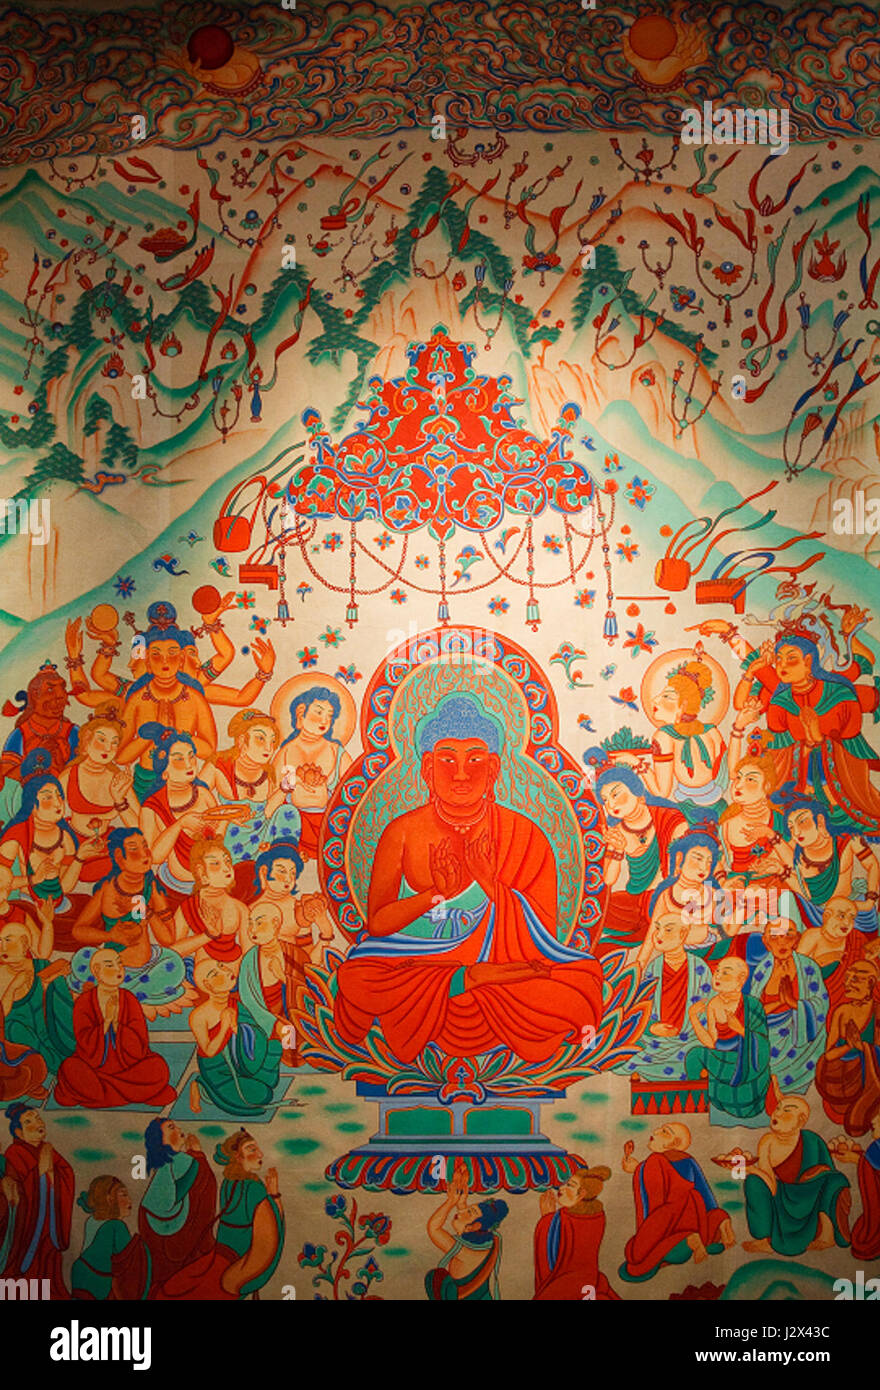 Amitabha Buddha Sukhavati Dunhuang Mogao Caves Stock Photo